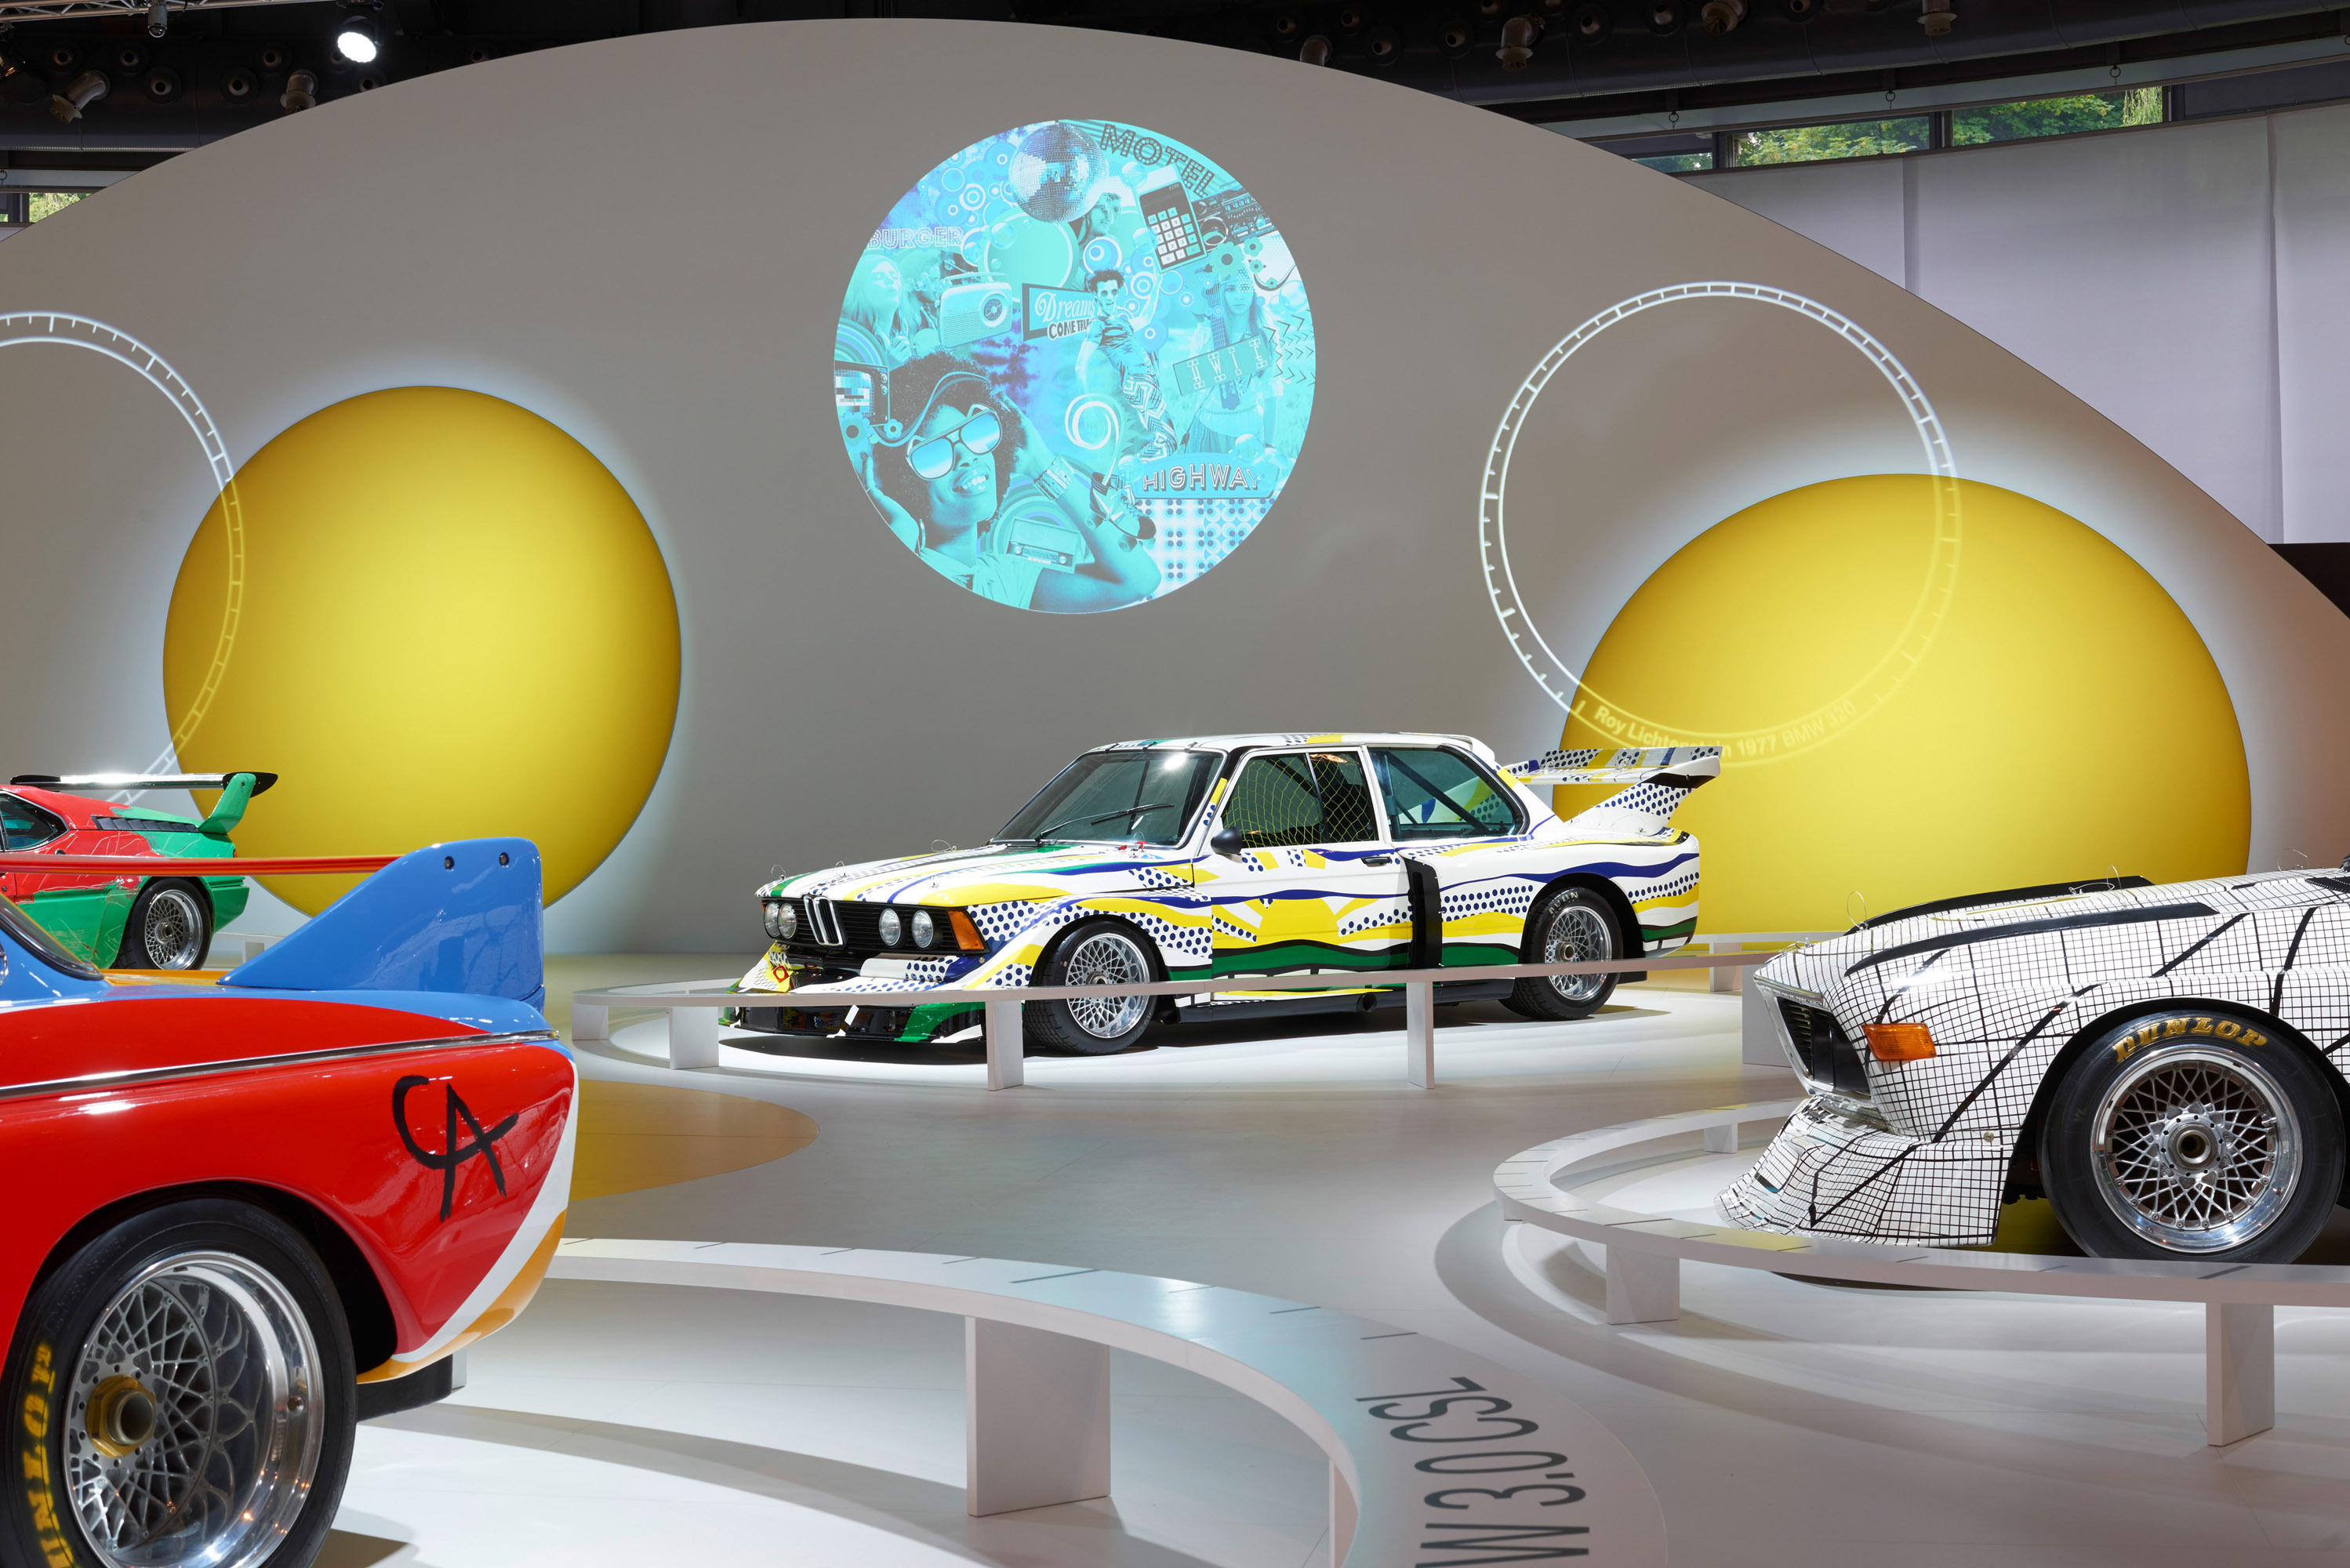 40 Years Anniversary of BMW Art Cars